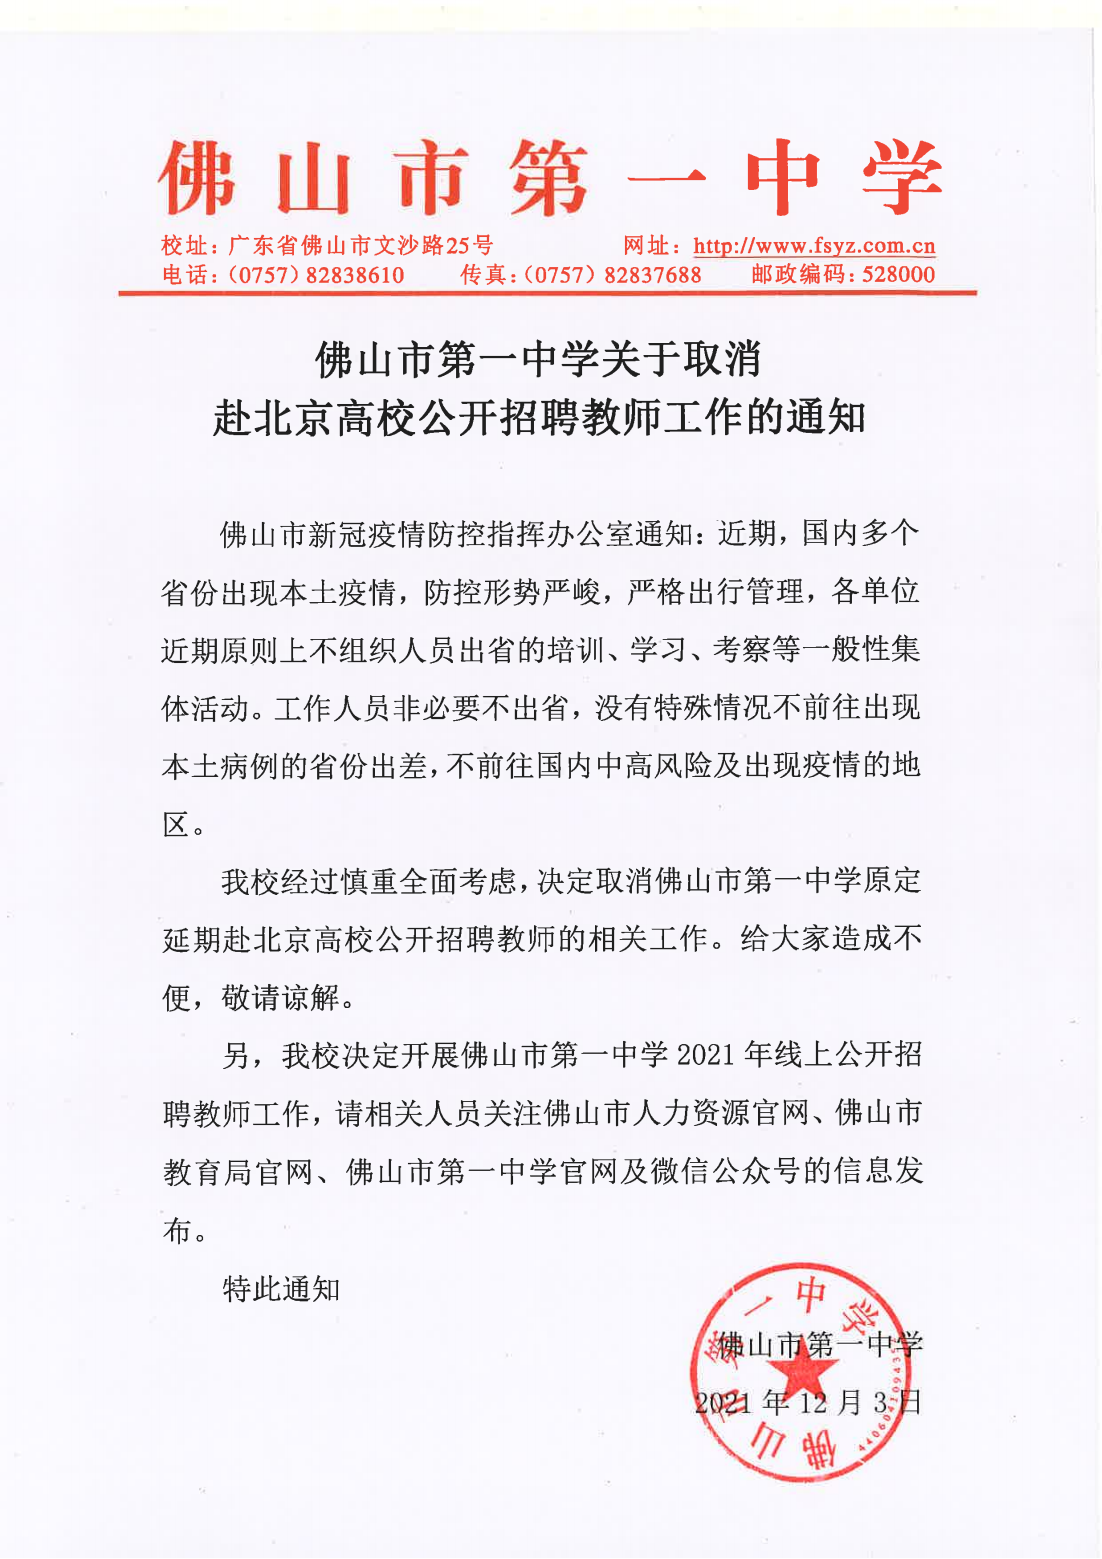 佛山市第一中学关于取消赴北京高校公开招聘教师工作的通知